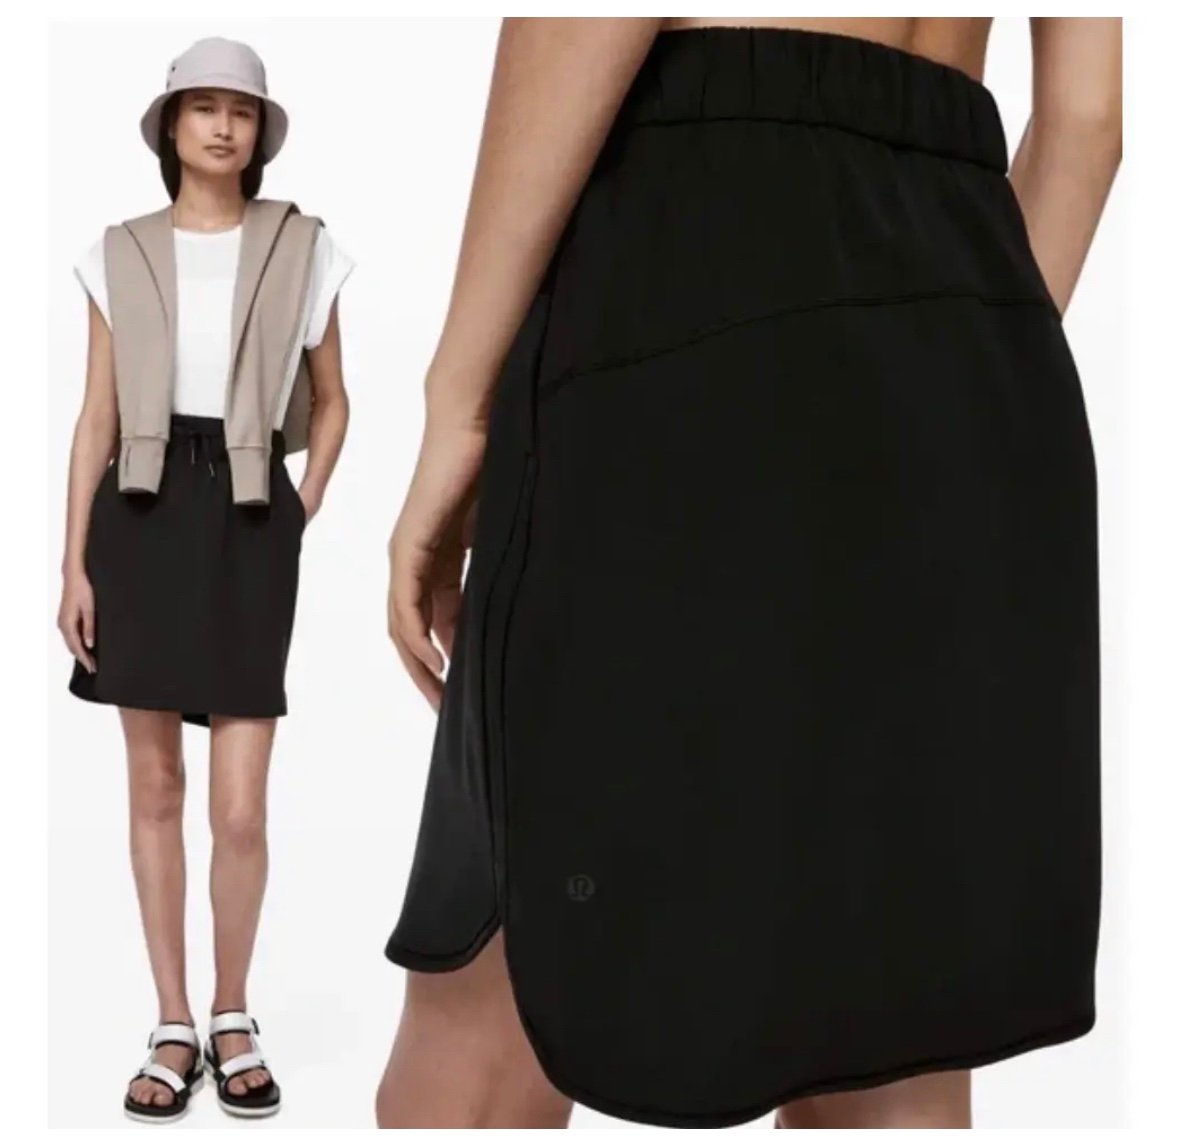 where to buy  Lululemon “On the Fly” Skirt 4 i3uW24sev just buy it